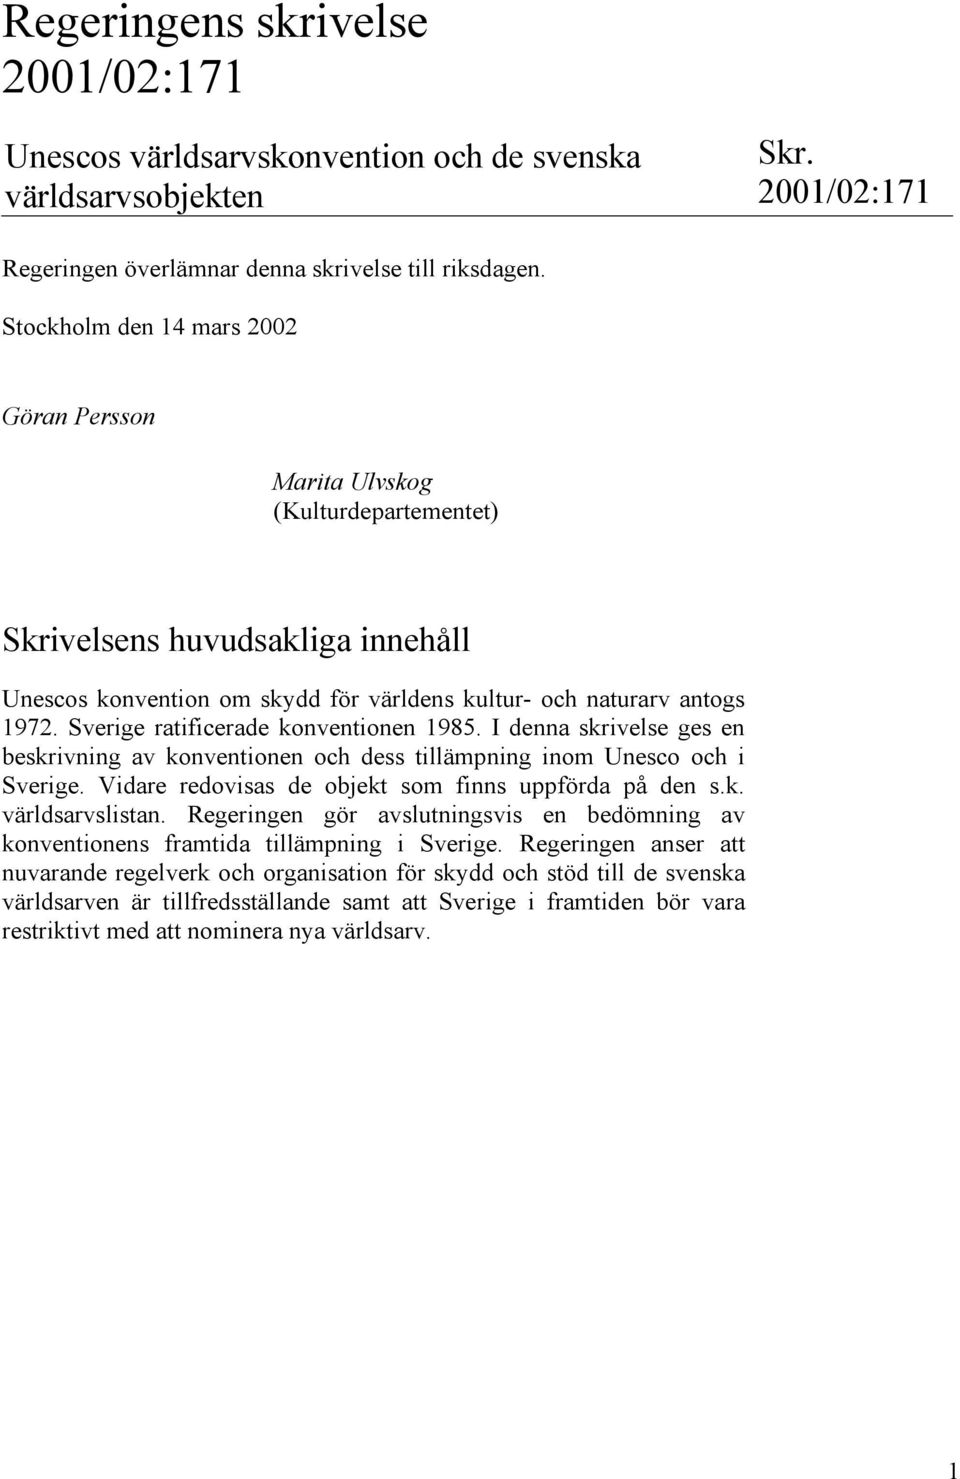 Sverige ratificerade konventionen 1985. I denna skrivelse ges en beskrivning av konventionen och dess tillämpning inom Unesco och i Sverige. Vidare redovisas de objekt som finns uppförda på den s.k. världsarvslistan.